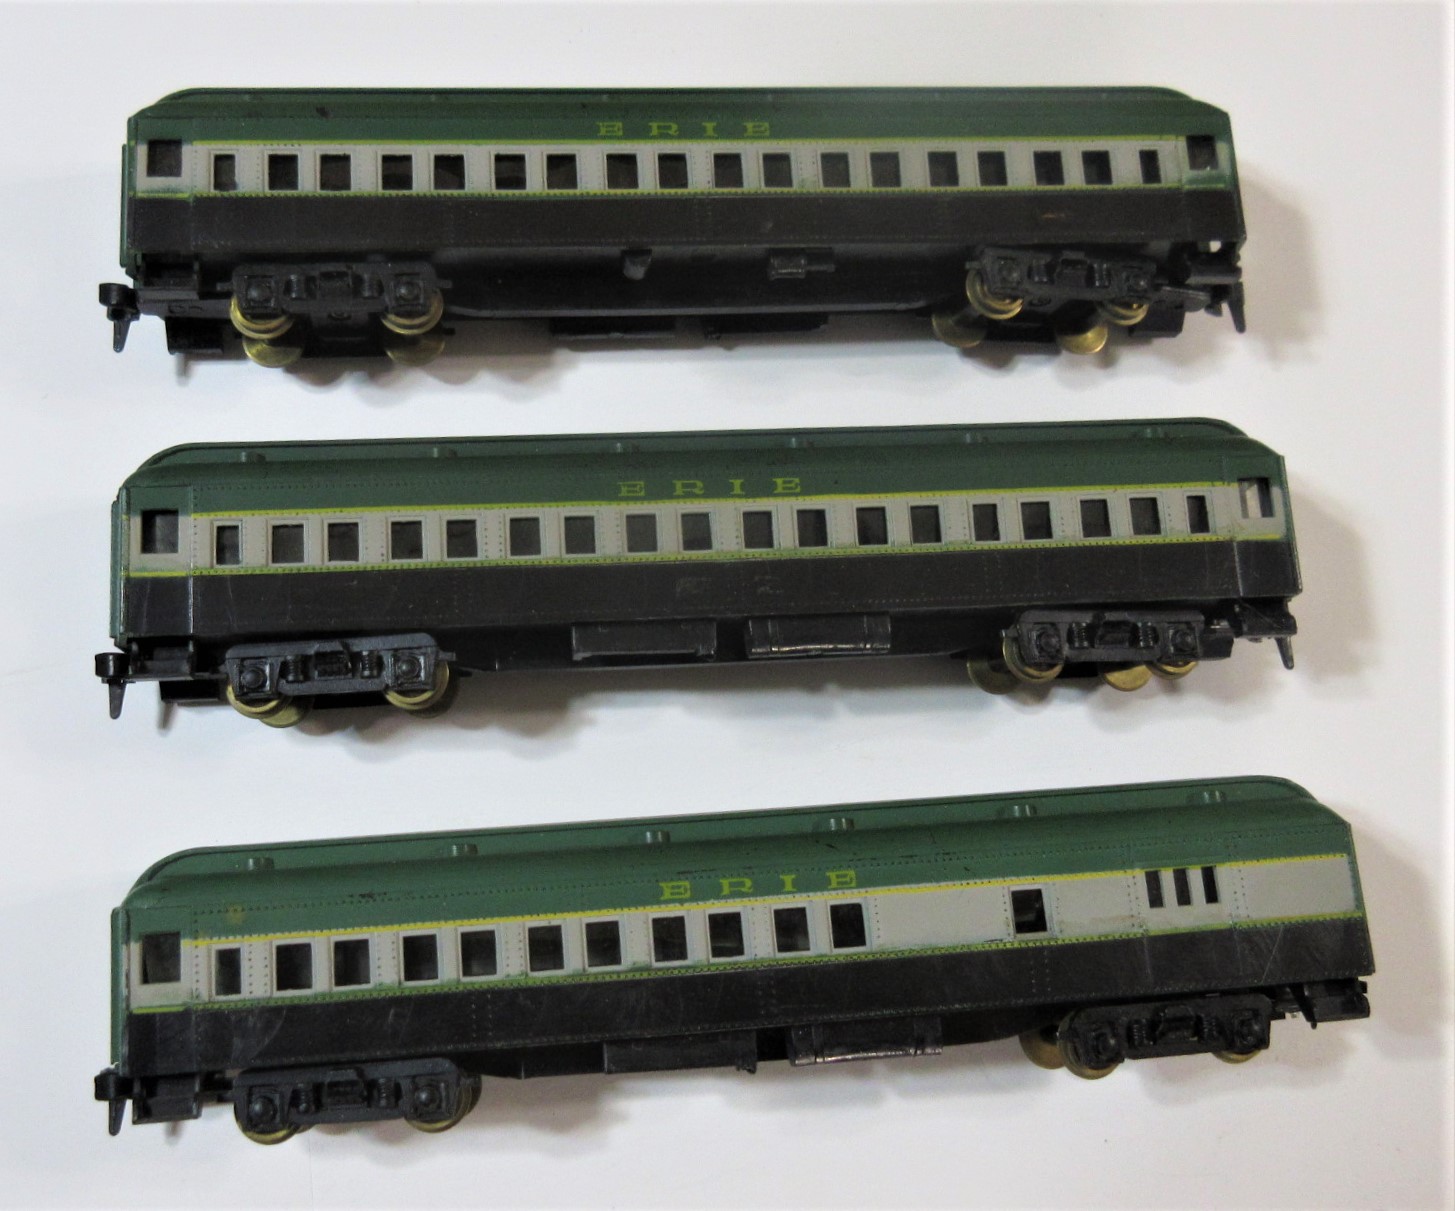 HObbyline Green Gray and black passenger cars